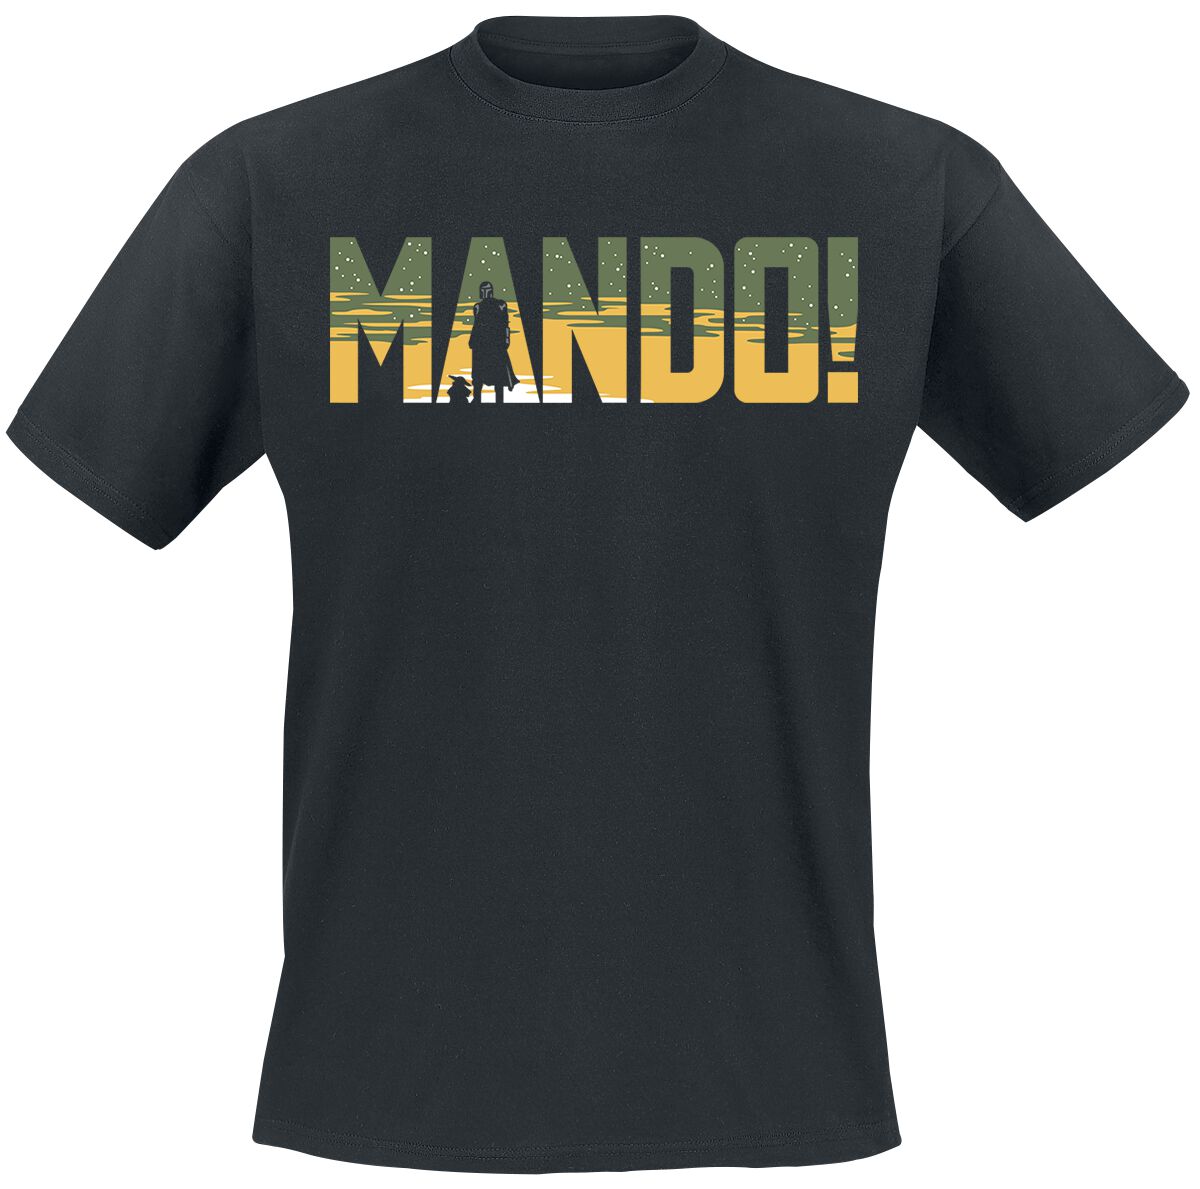 Star Wars T-Shirt - The Mandalorian - Season 3 - Mando - S bis XXL - für Männer - Größe S - schwarz  - EMP exklusives Merchandise!